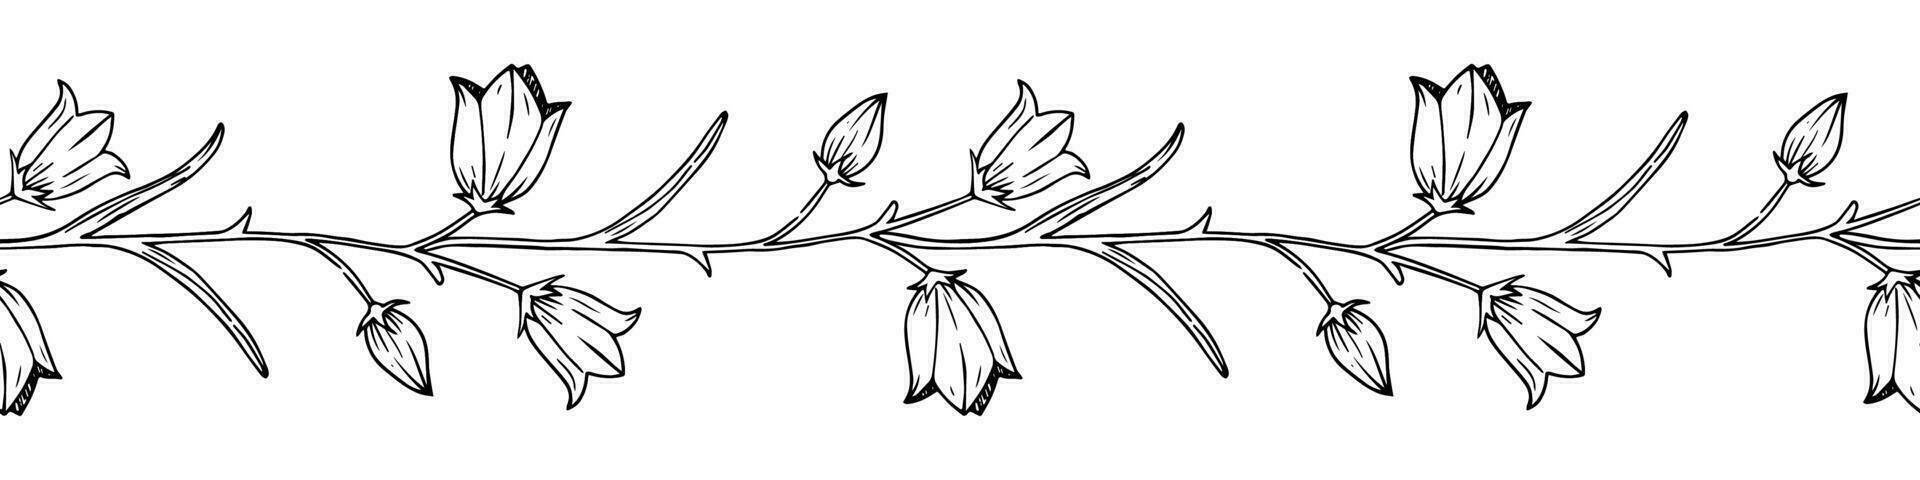 Vektor Hand gezeichnet Glockenblume und Blätter nahtlos Bürste. Wildblume im realistisch Stil. Blumen- skizzieren Muster.